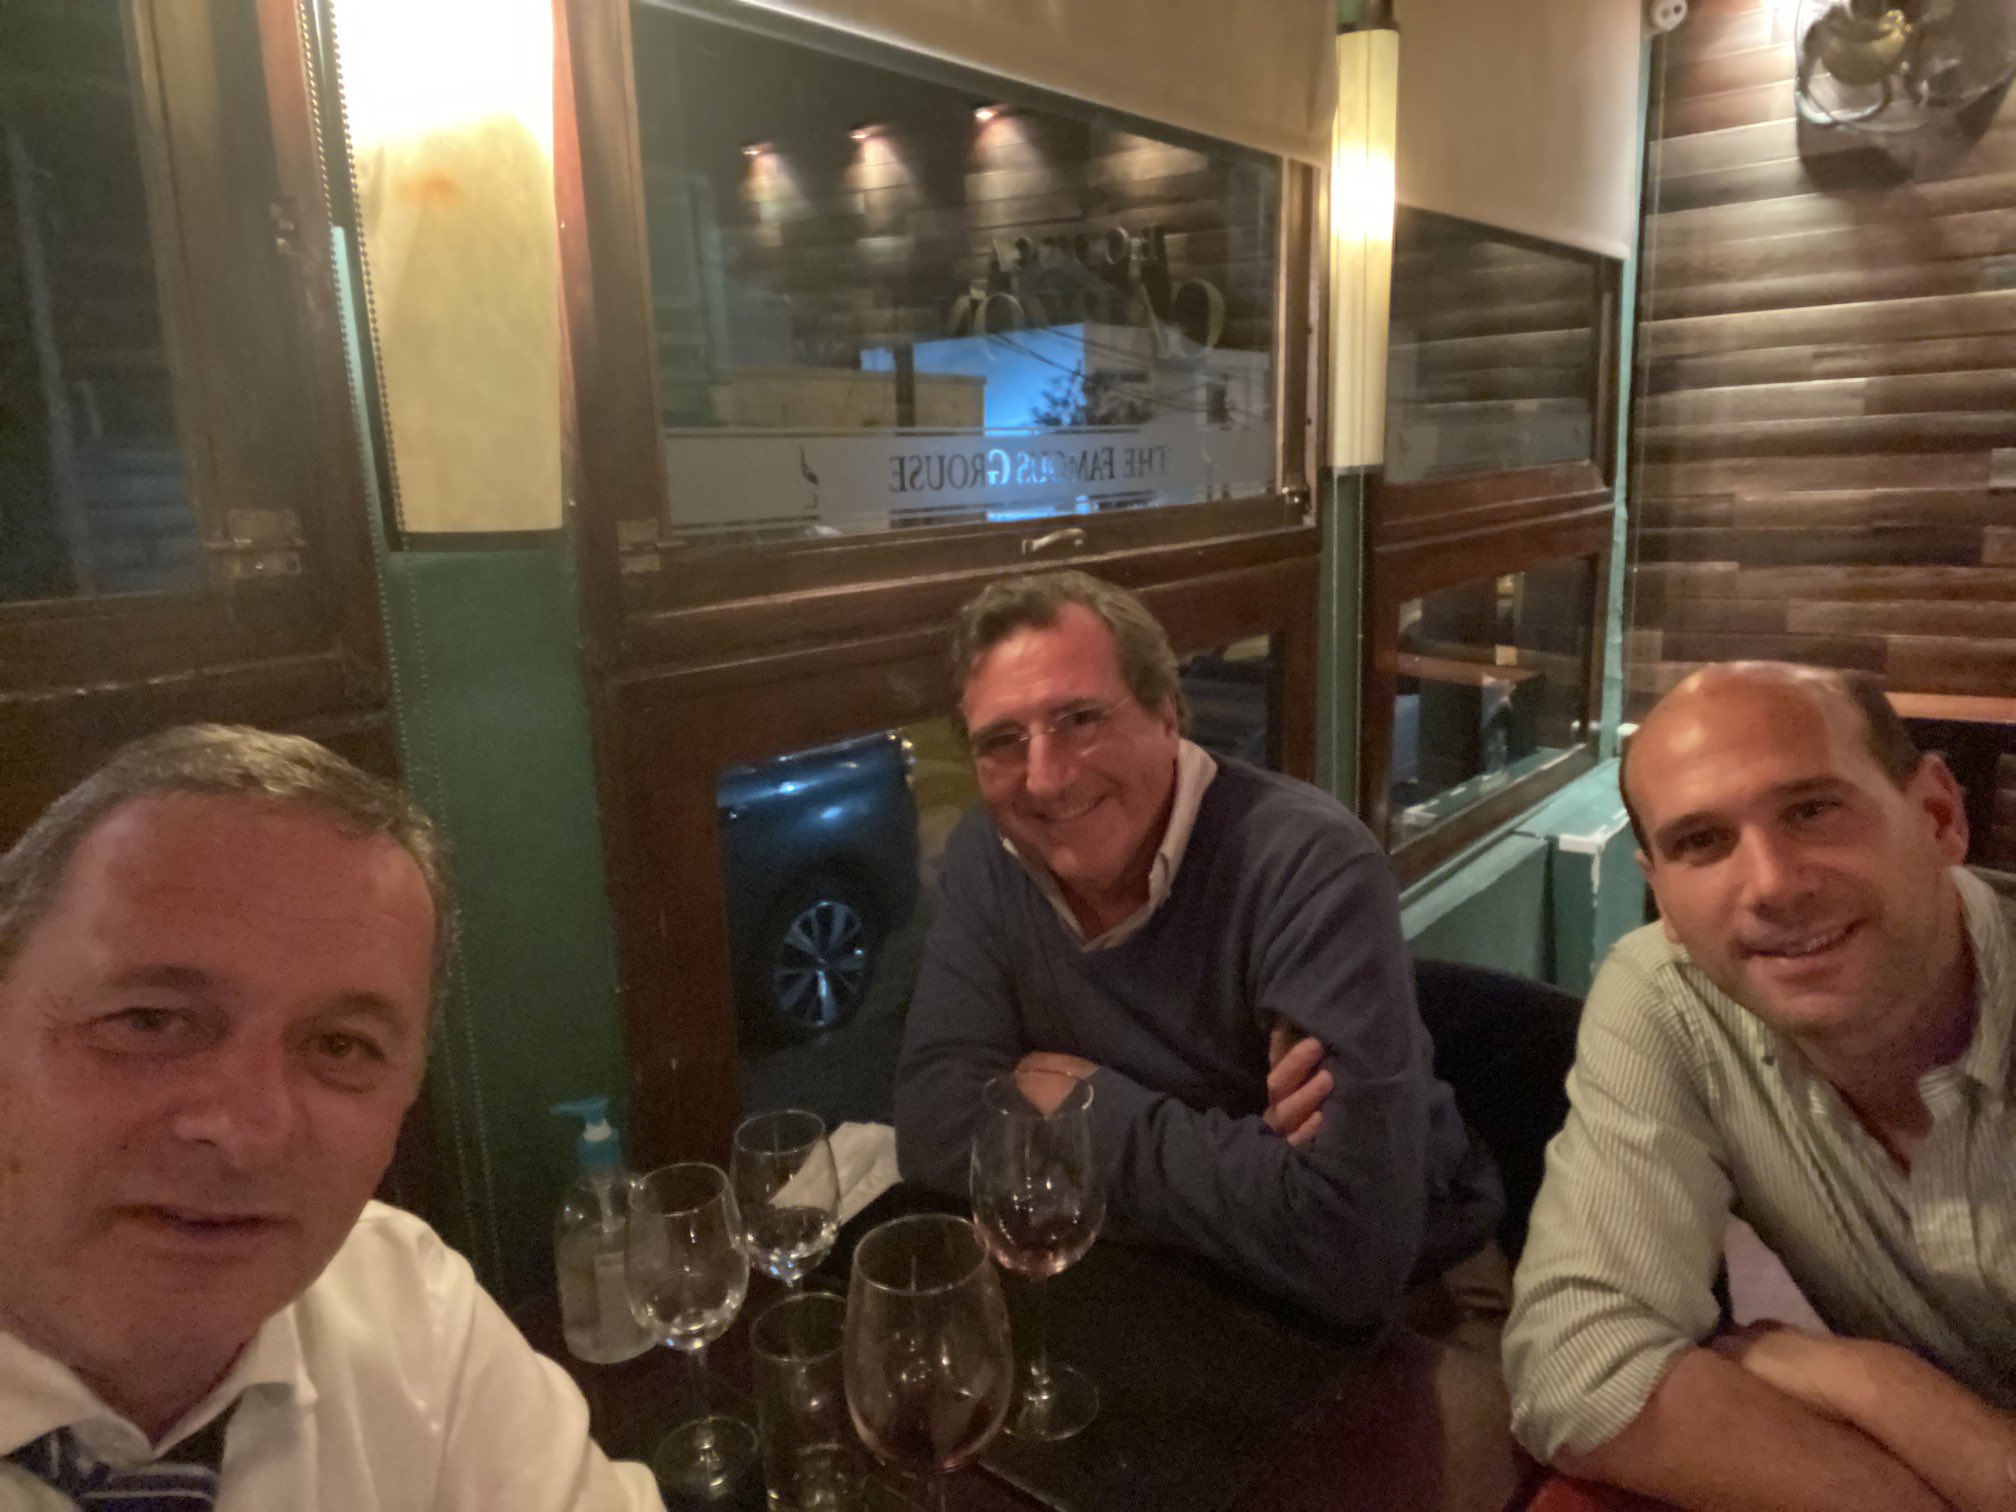 Álvaro Delgado, Armando Castaingdebat y Martín Lema cenando en la noche de este lunes. Foto: Twitter / Álvaro Delgado